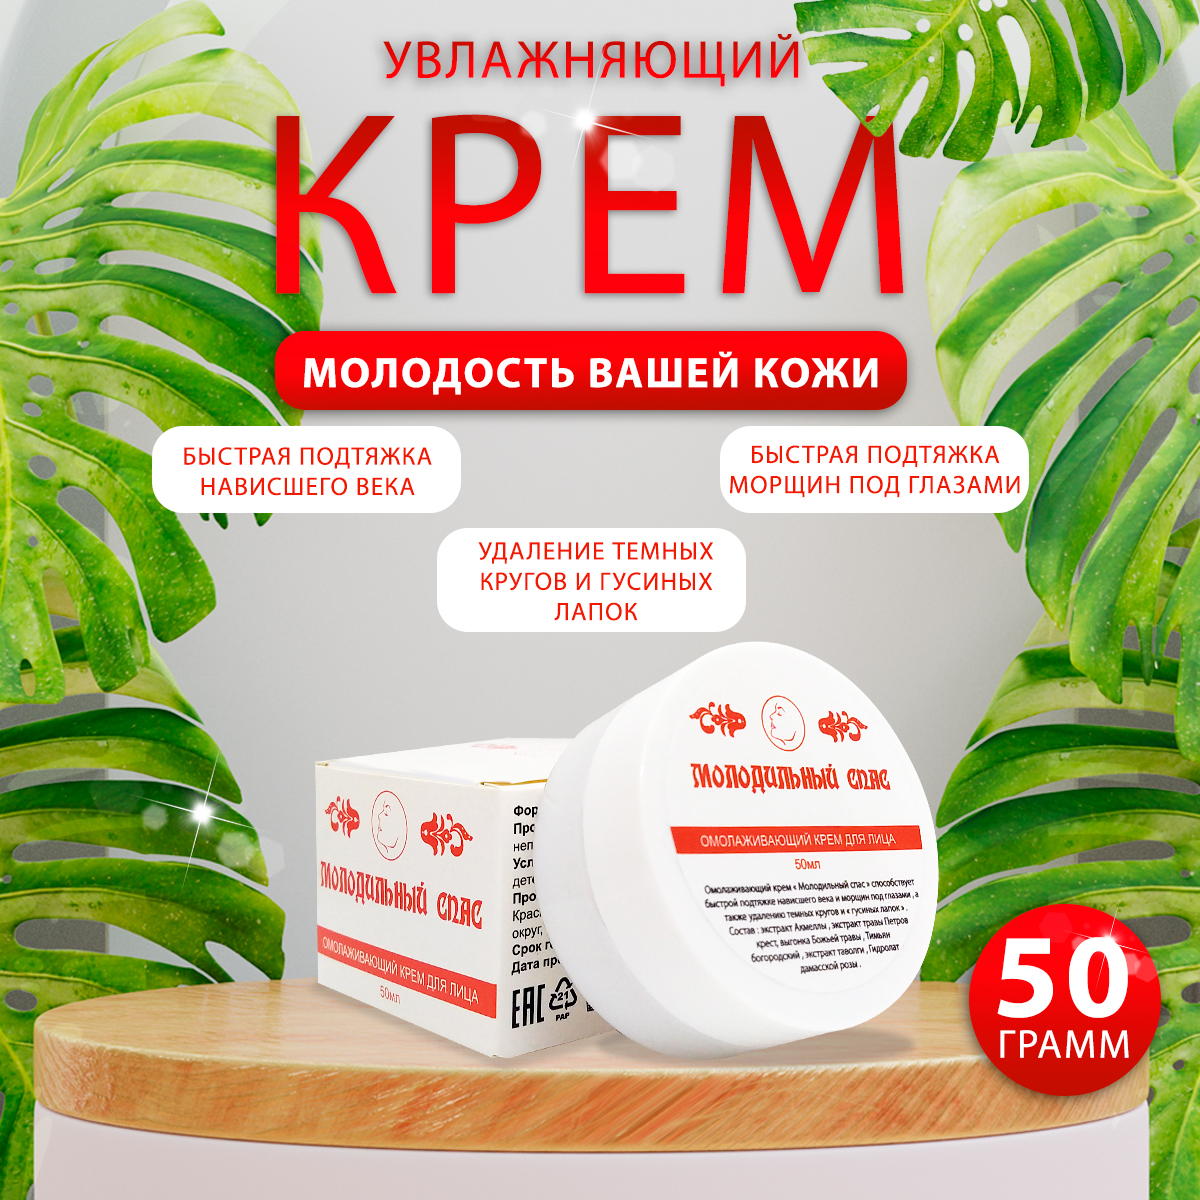 Крем от морщин Kuban Organic Group антивозрастной Молодильный Спас